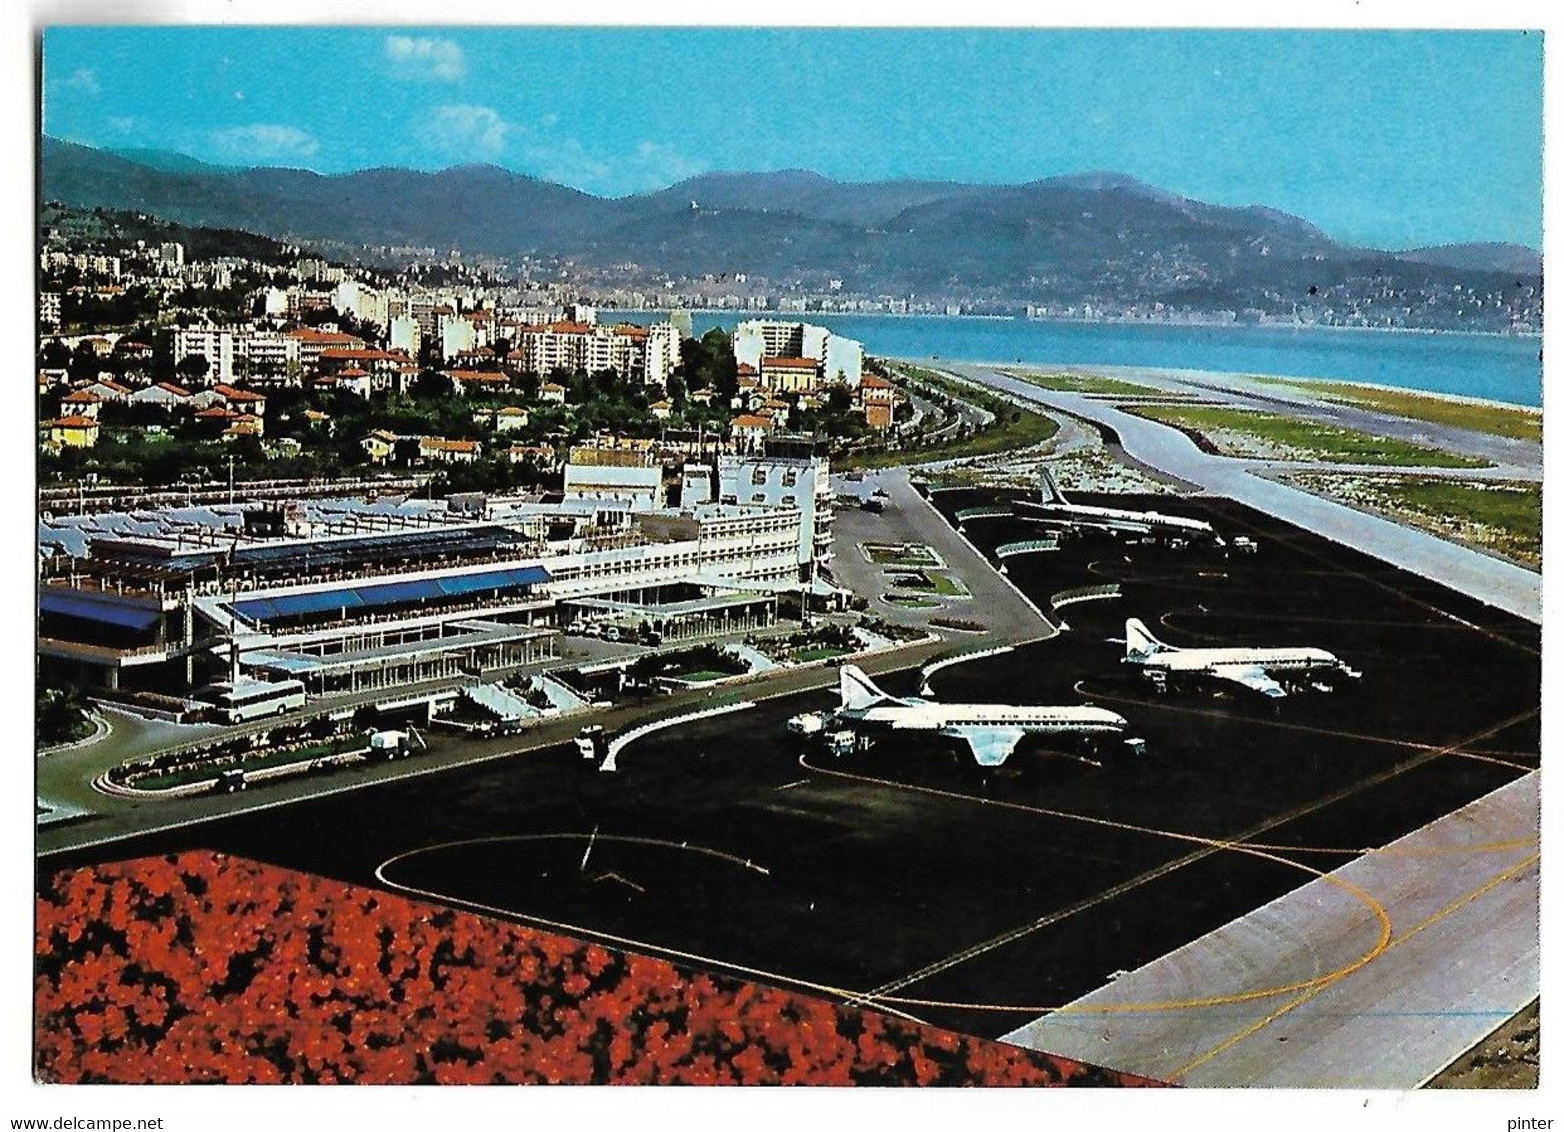 NICE - Vue Aérienne De L'Aéroport Nice-Côte D'Azur - Transport Aérien - Aéroport